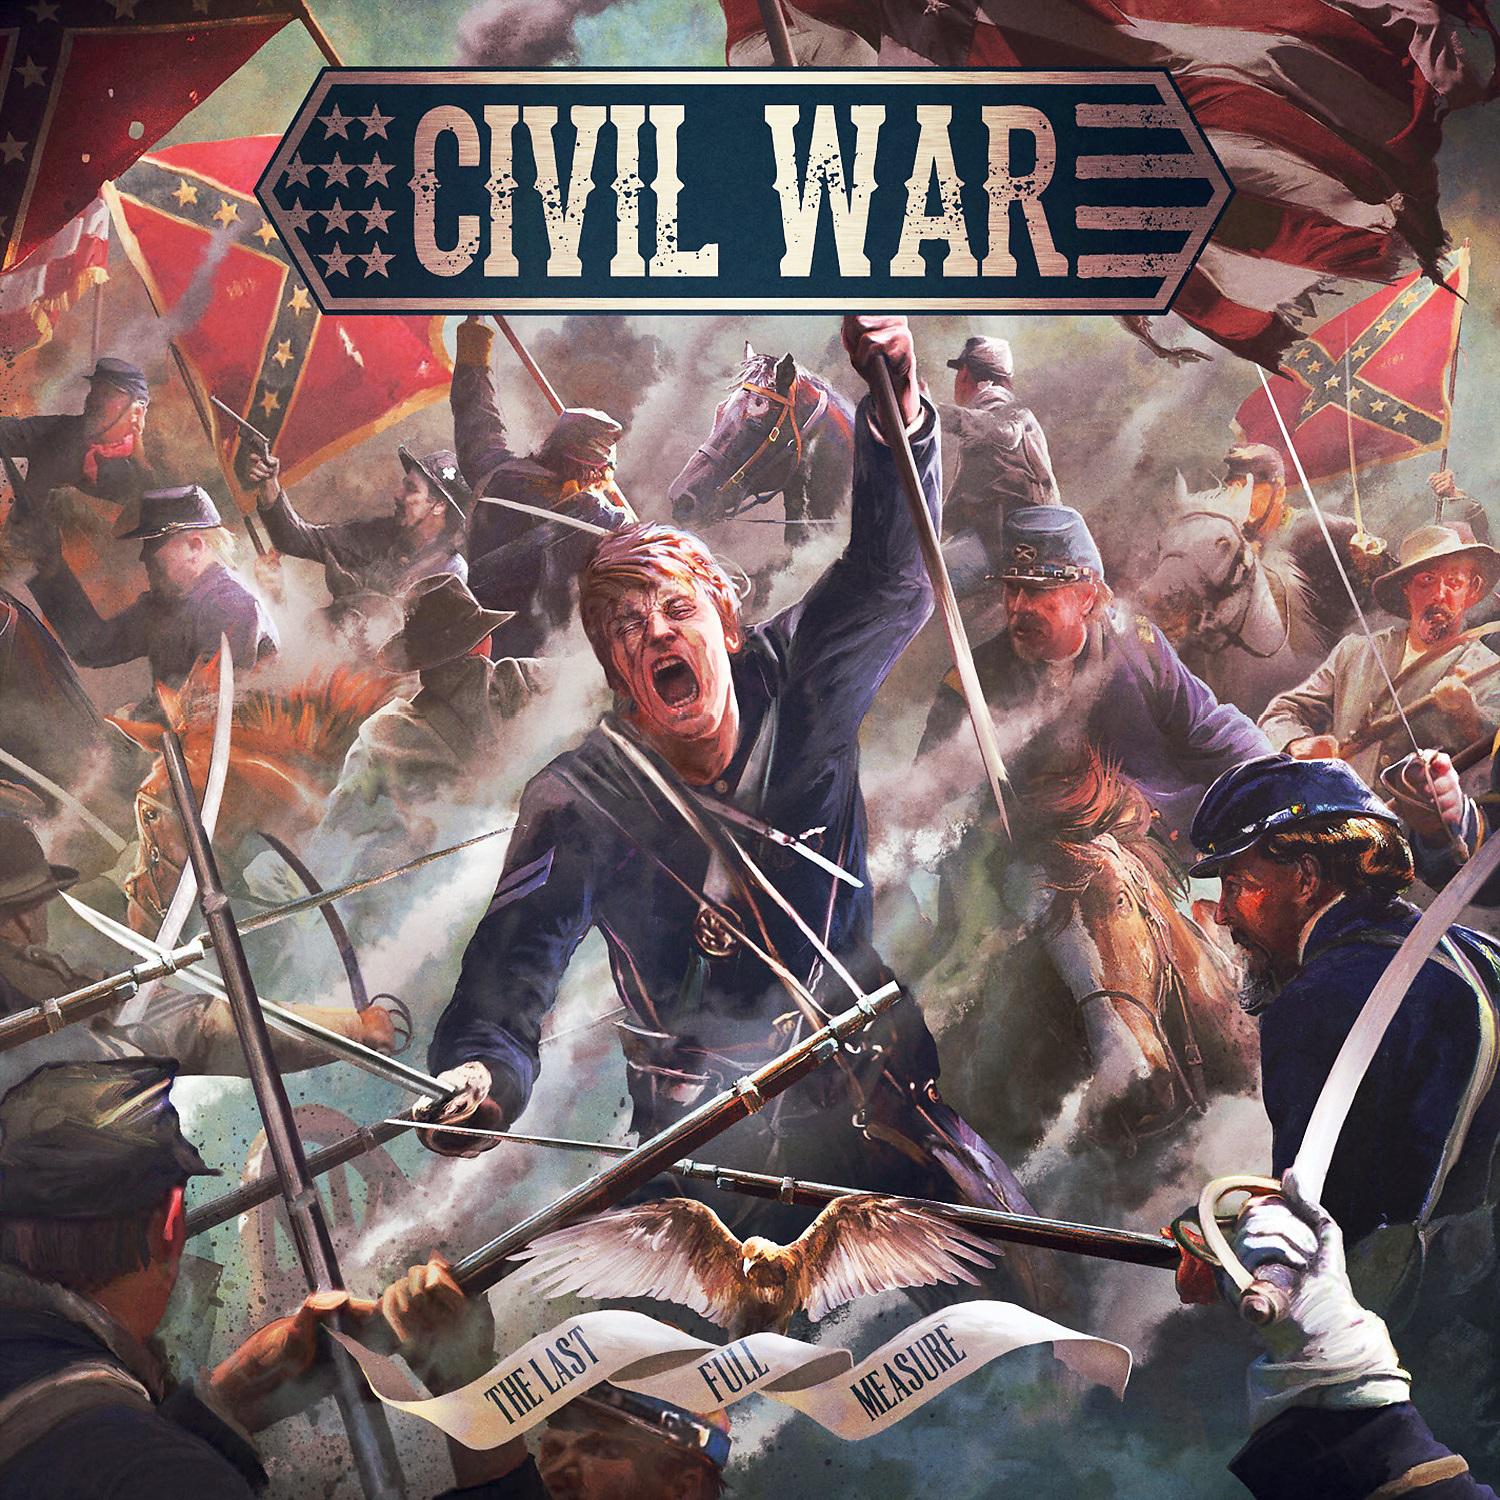 2 войны слушать. Civil War группа. Civil War the last Full measure. Civil War группа обложки. The Civil Wars album.